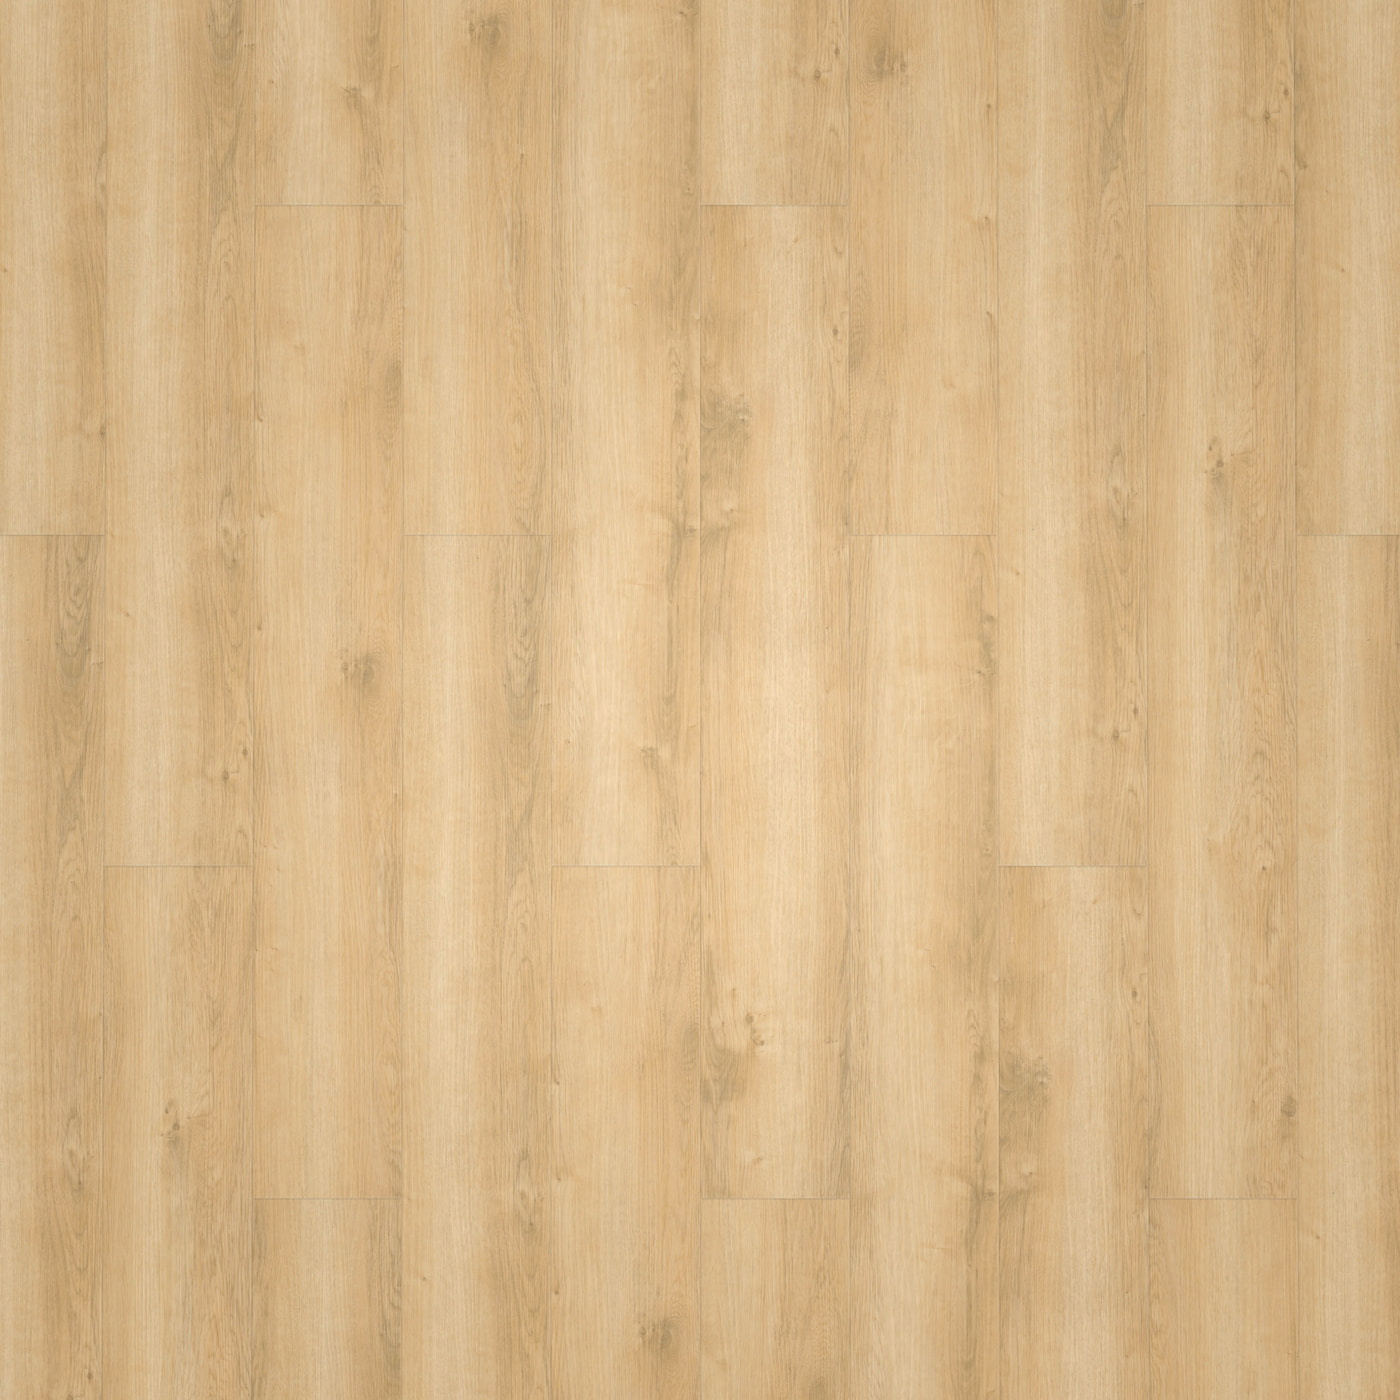 wineo Klebe-Vinyl wineo 800 wood Wheat Golden Oak Exklusive Holzstruktur